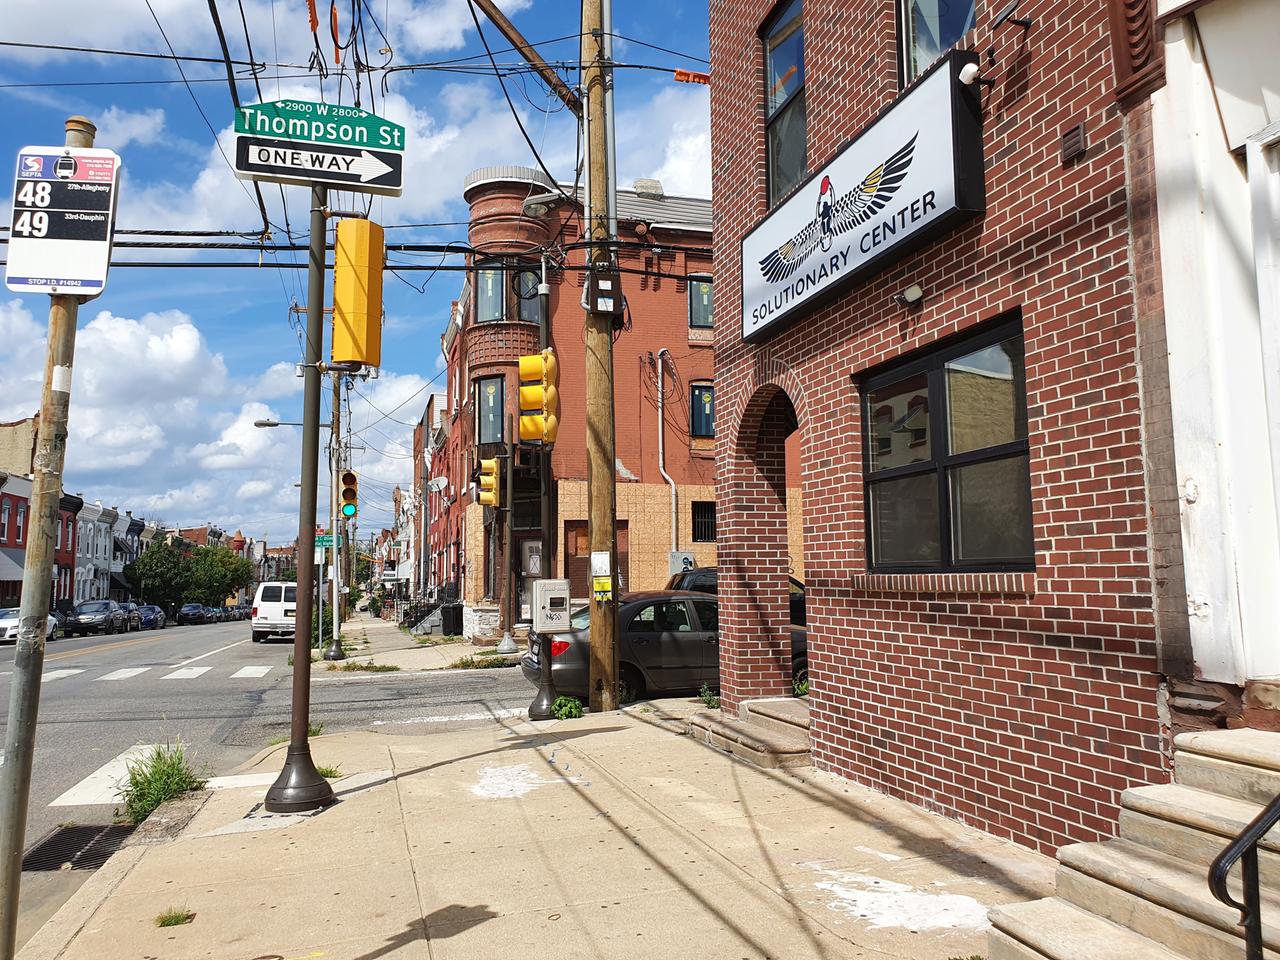 An einer Straßenecke eines Wohnviertels in Philadelphia befindet sich das Solutionary Center: rote Klinkersteine und ein großes, weißes Schild über dem Eingang.